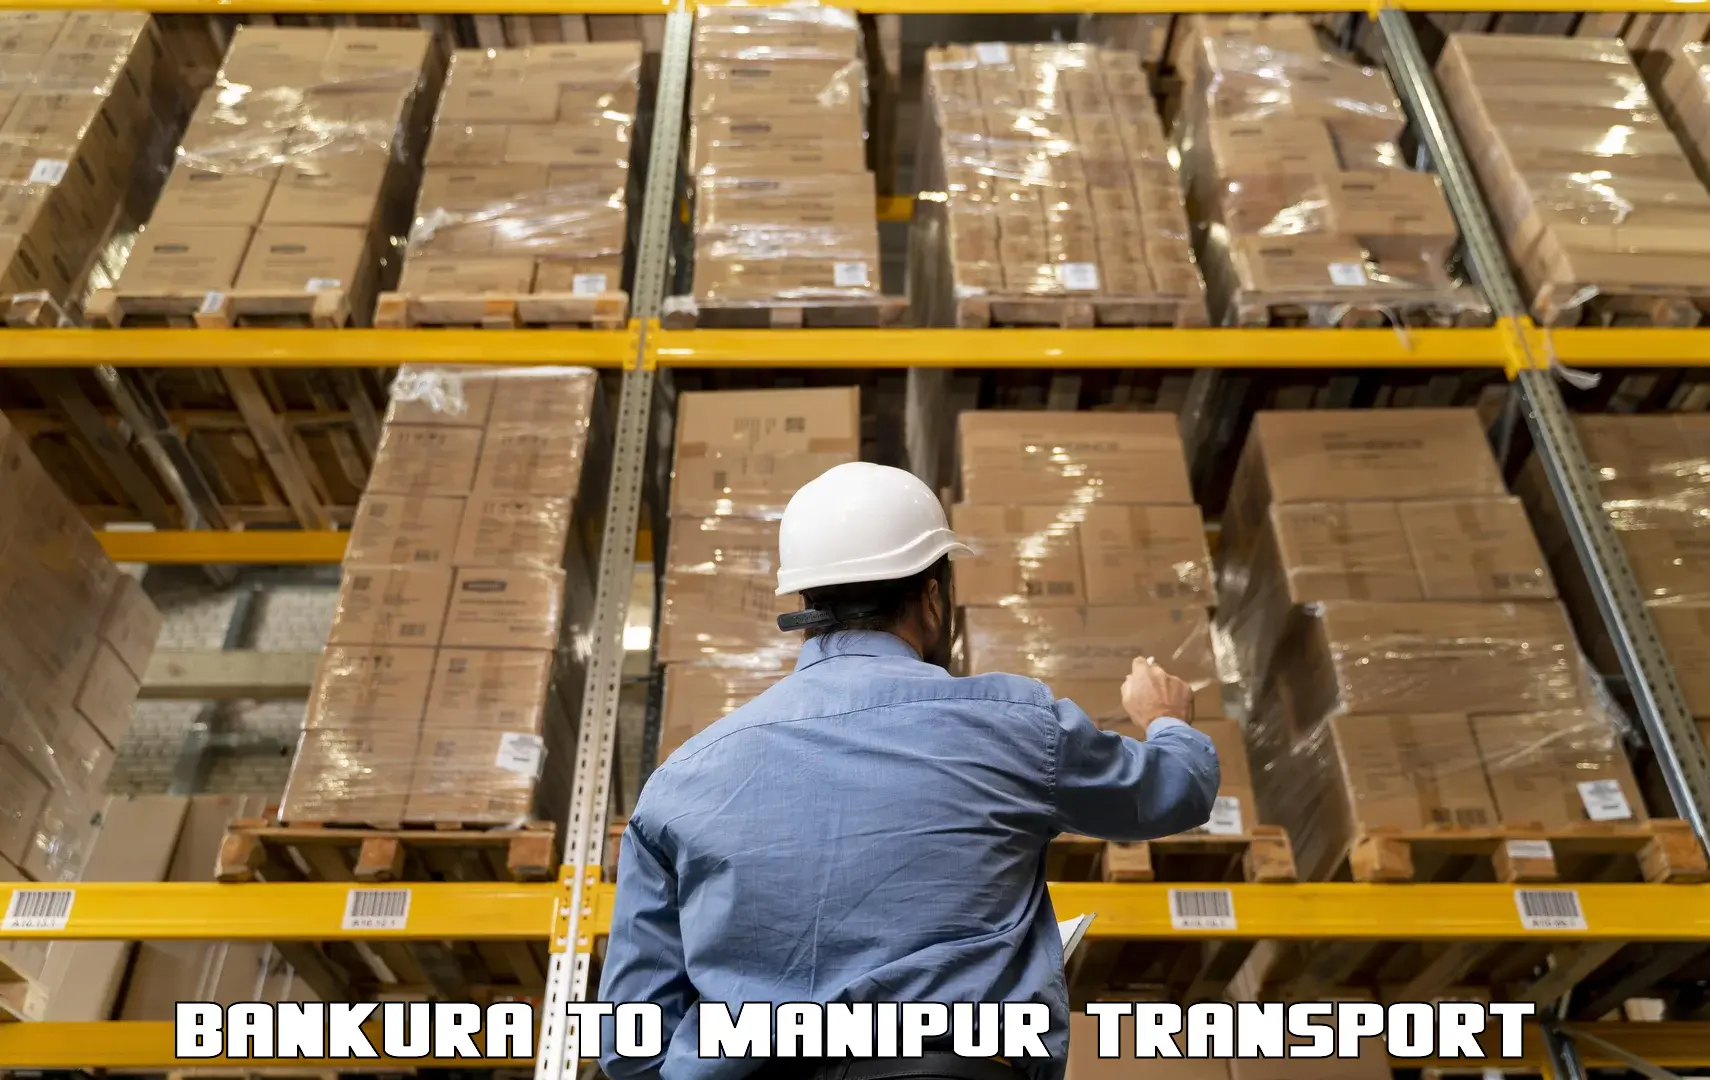 Furniture transport service Bankura to Kanti